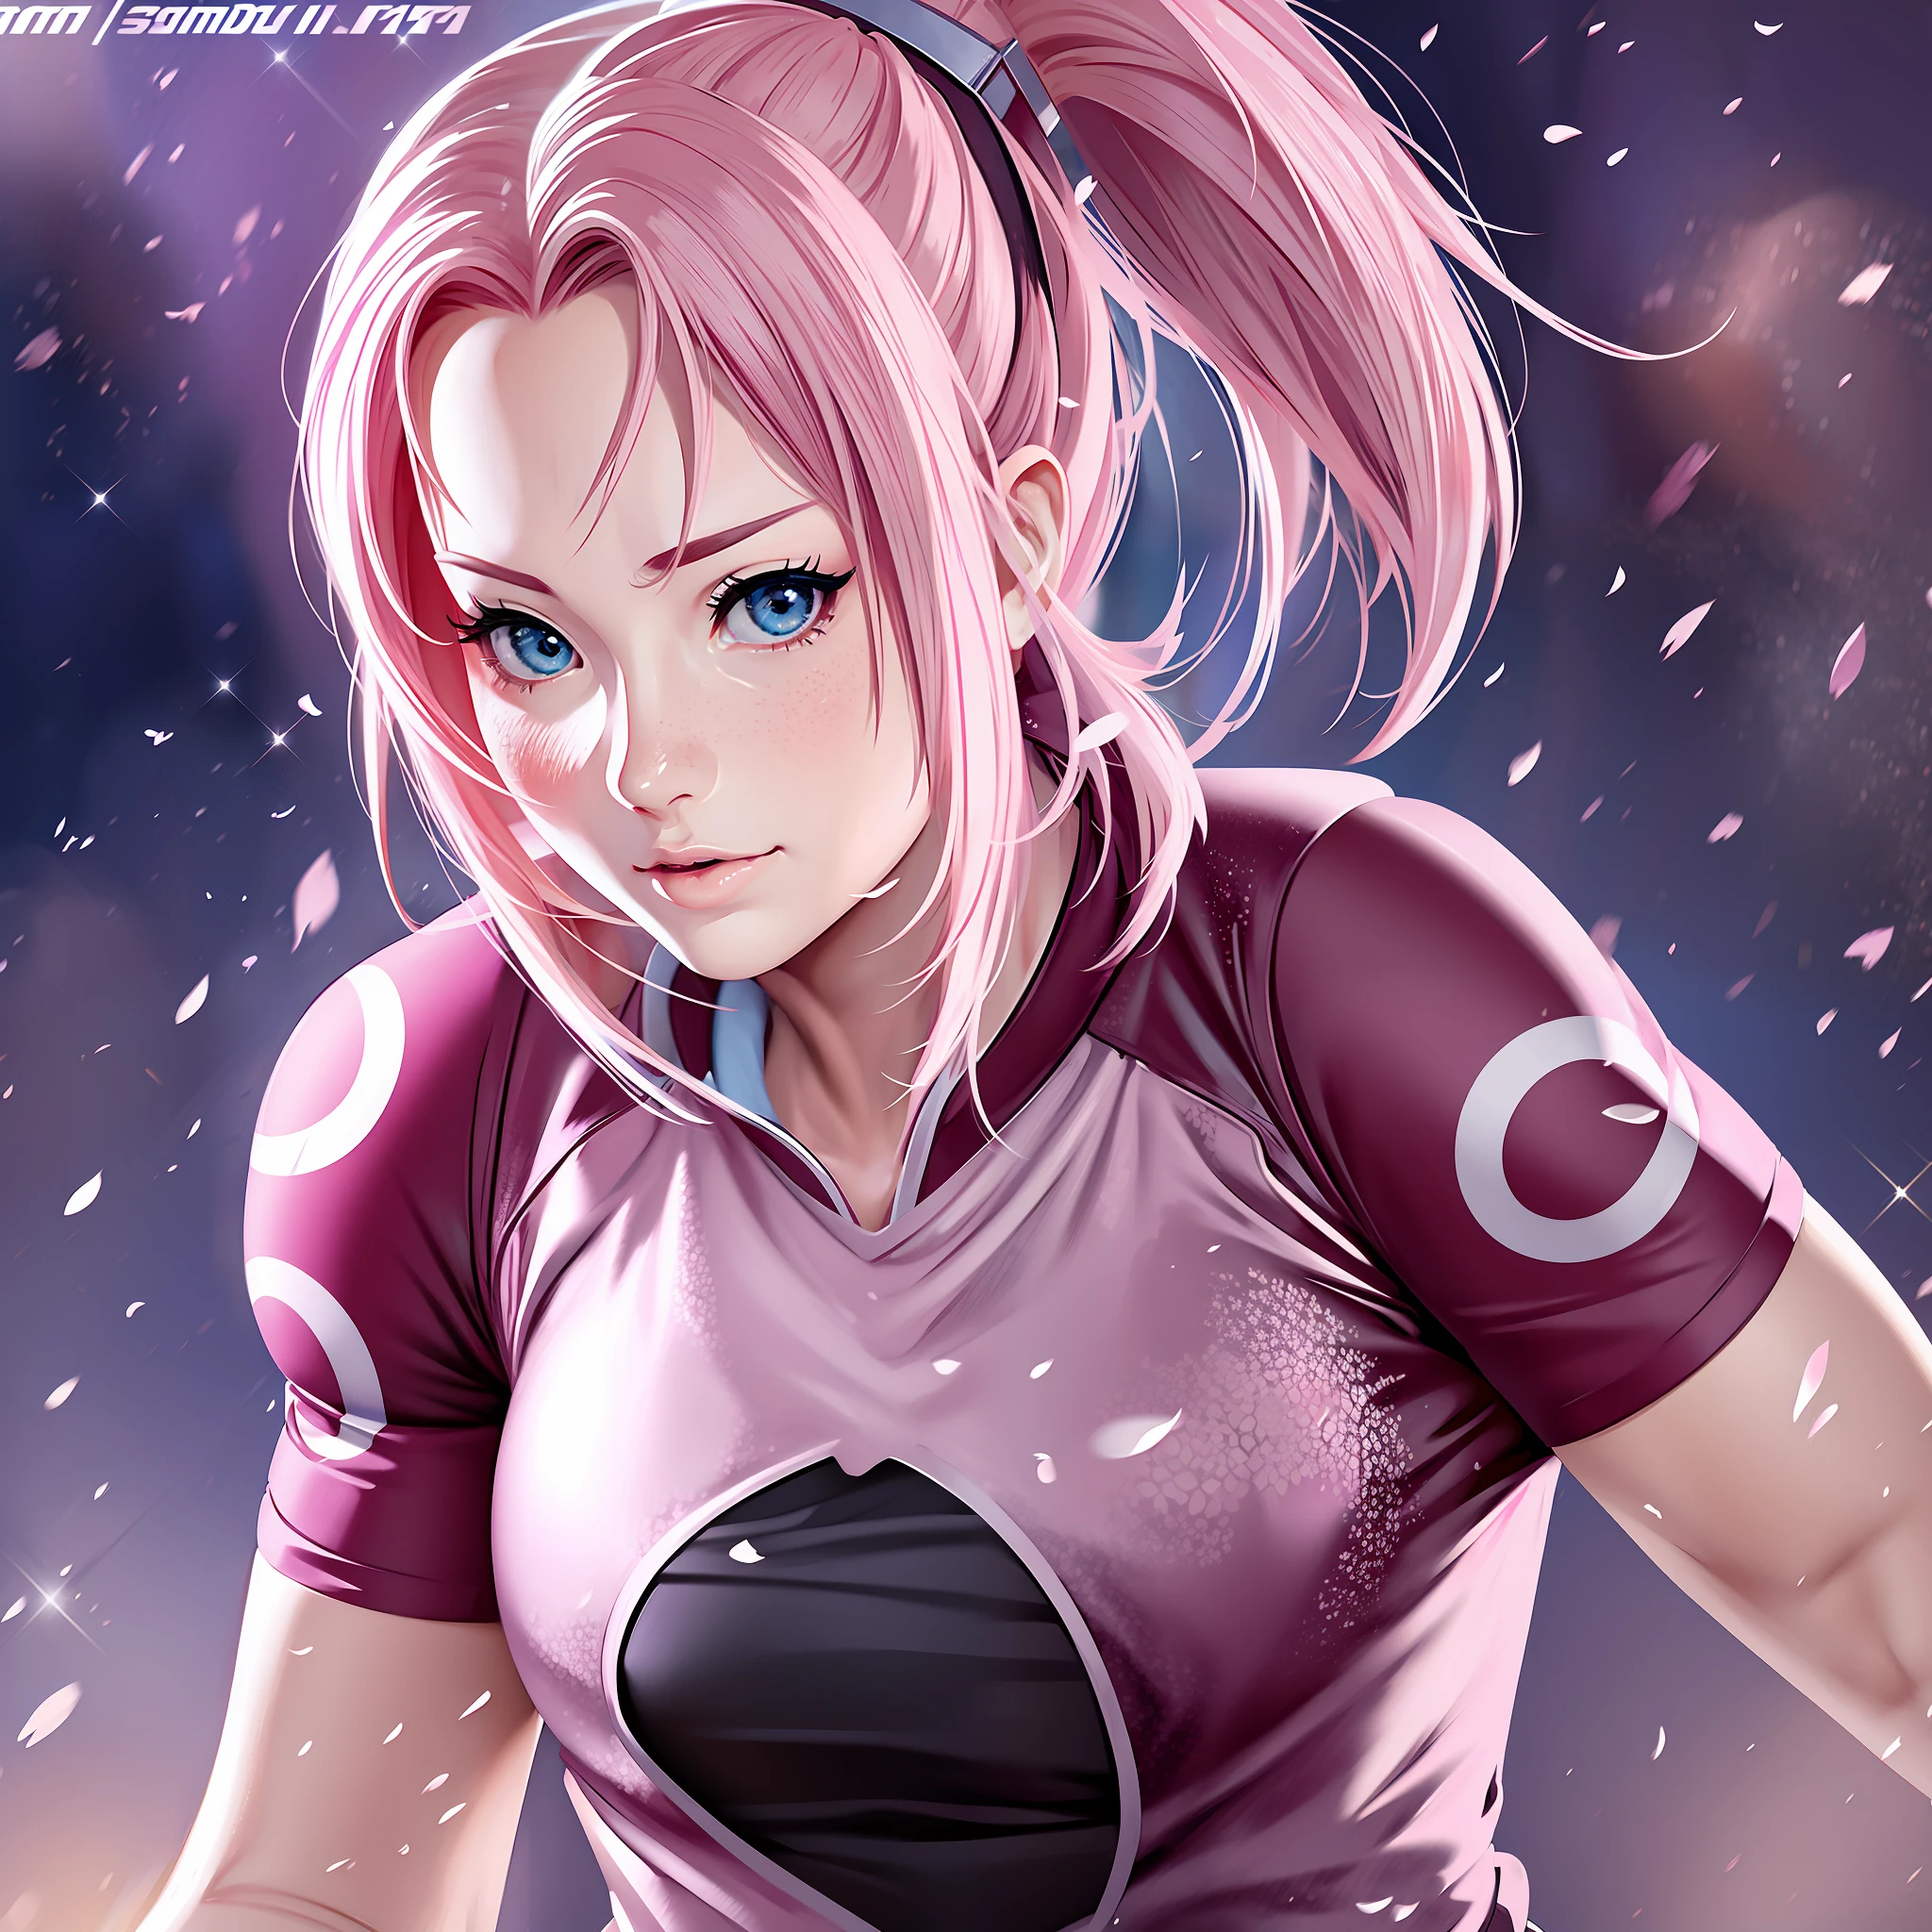 Sakura avec le maillot de foot pose un anime sexy super réaliste et bien détaillé